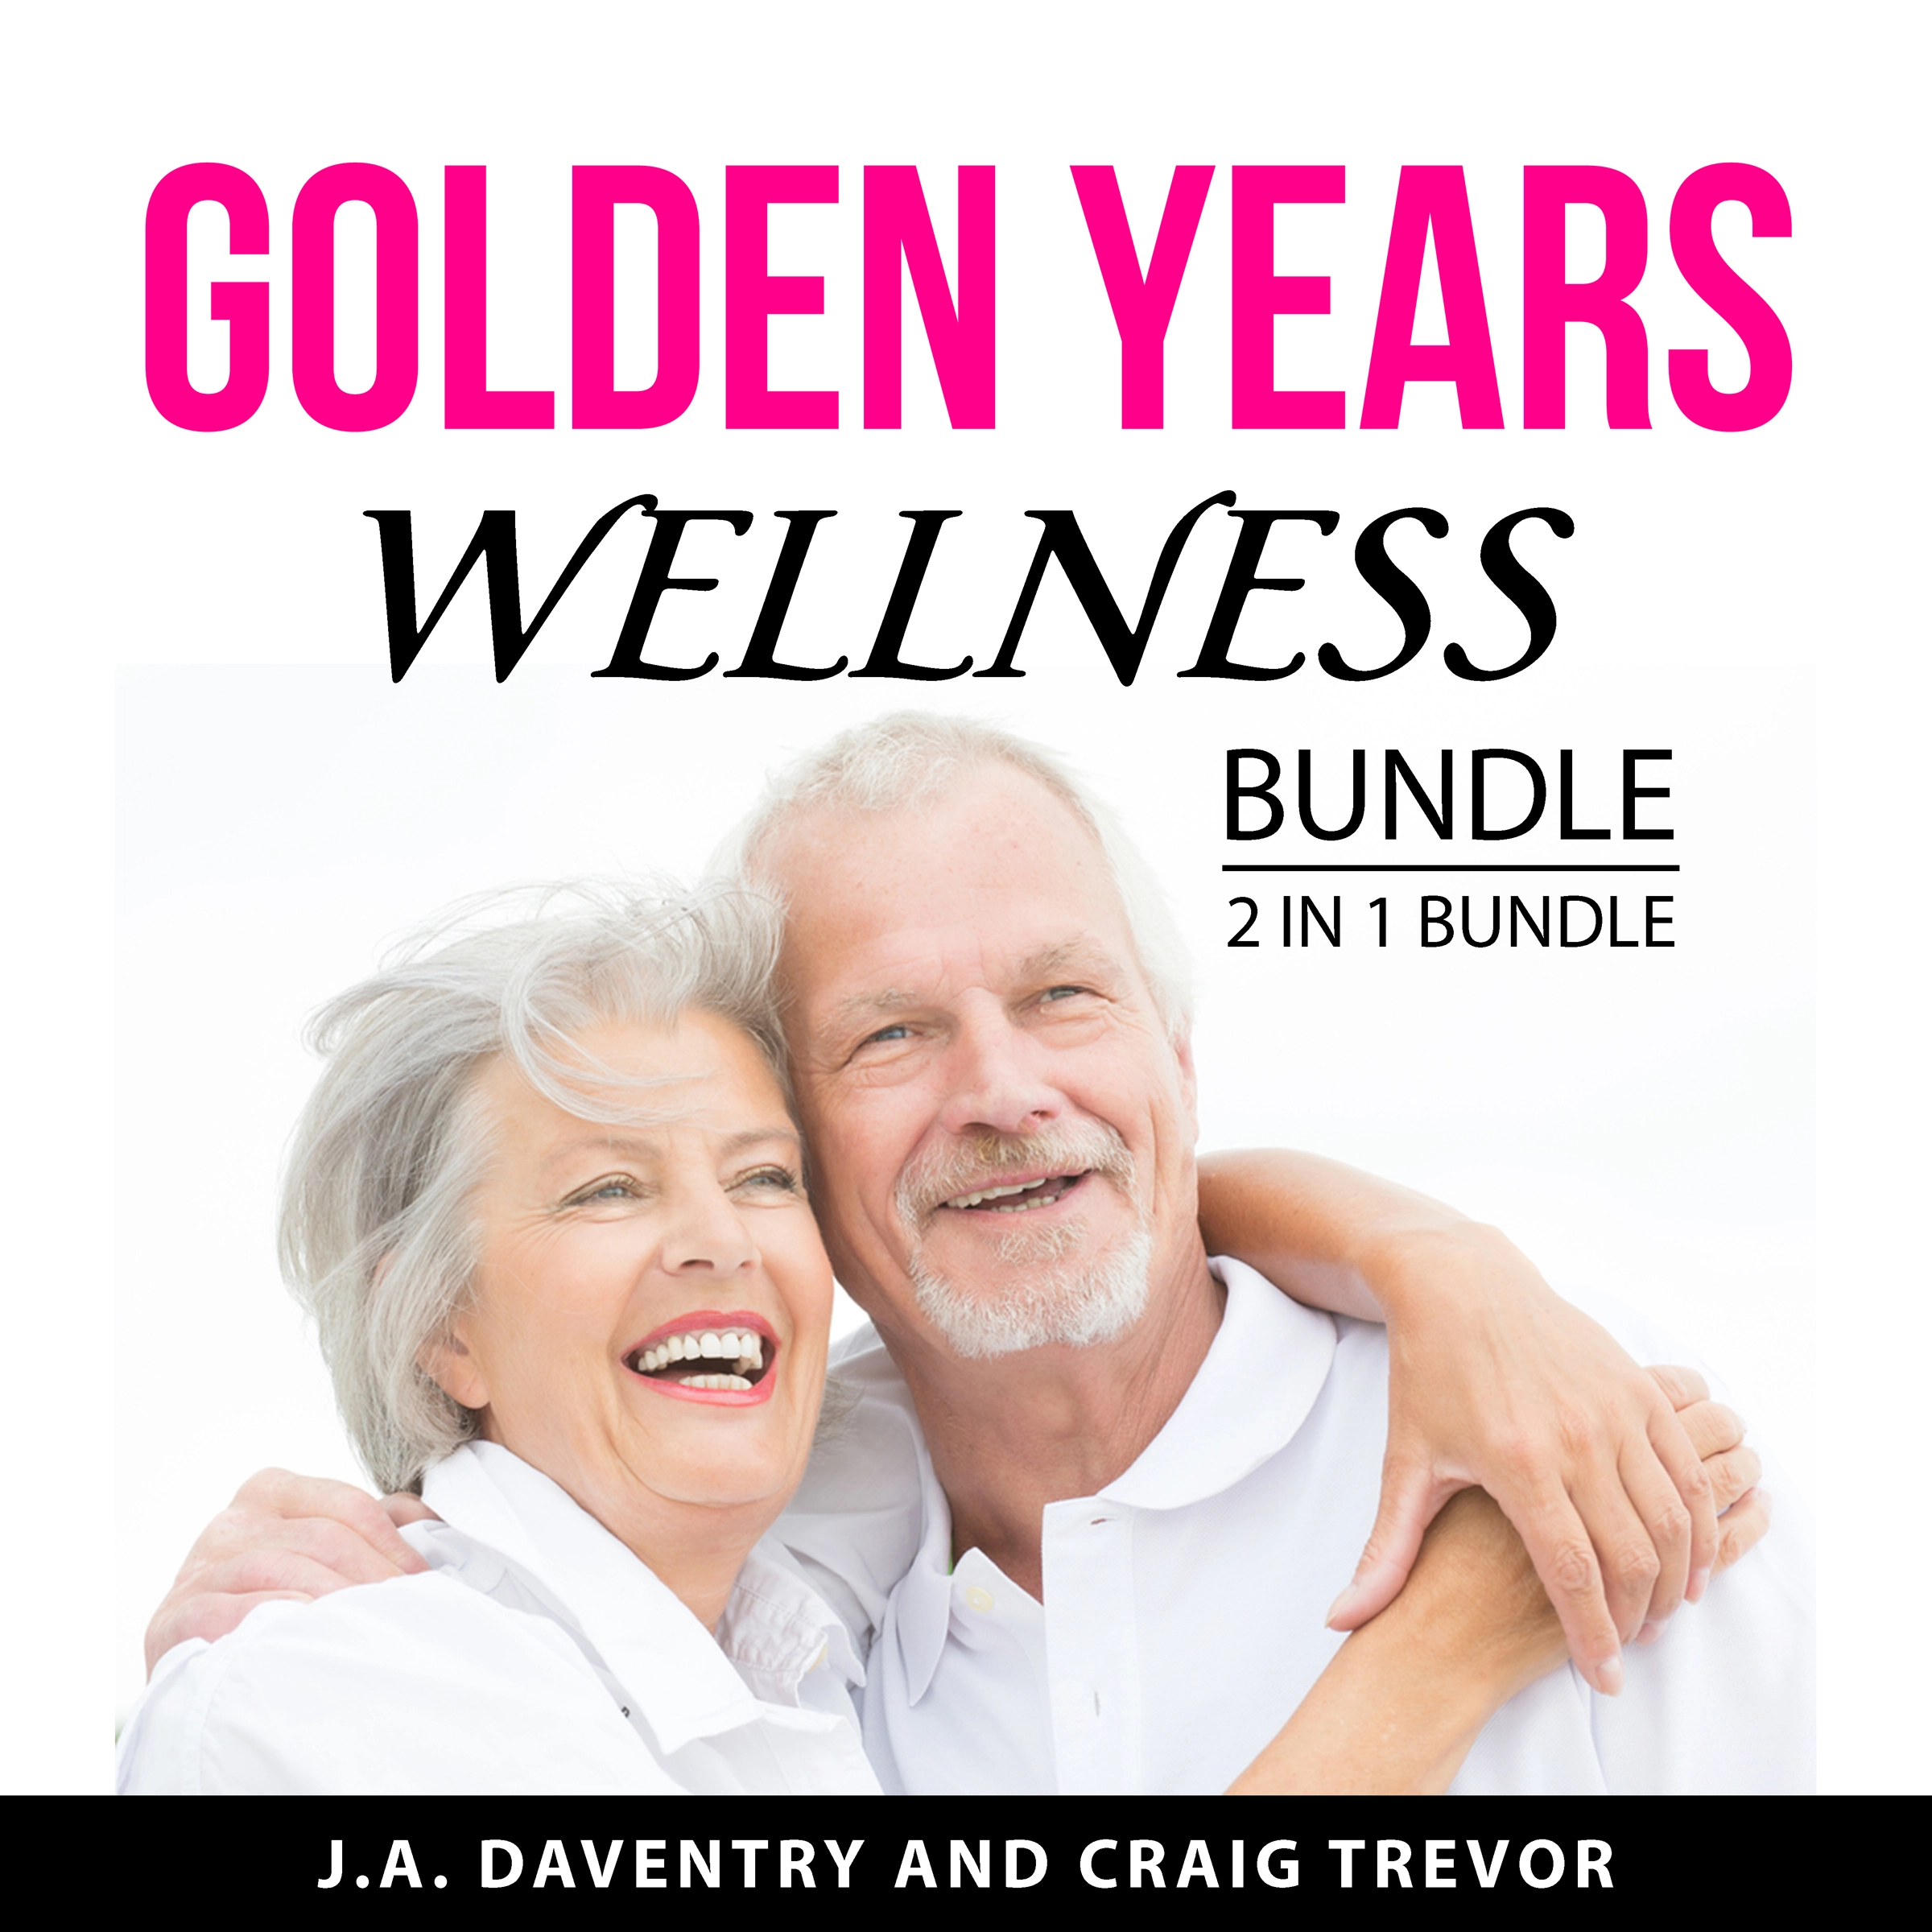 Golden Years Wellness Bundle, 2 in 1 Bundle Audiobook by Craig Trevor